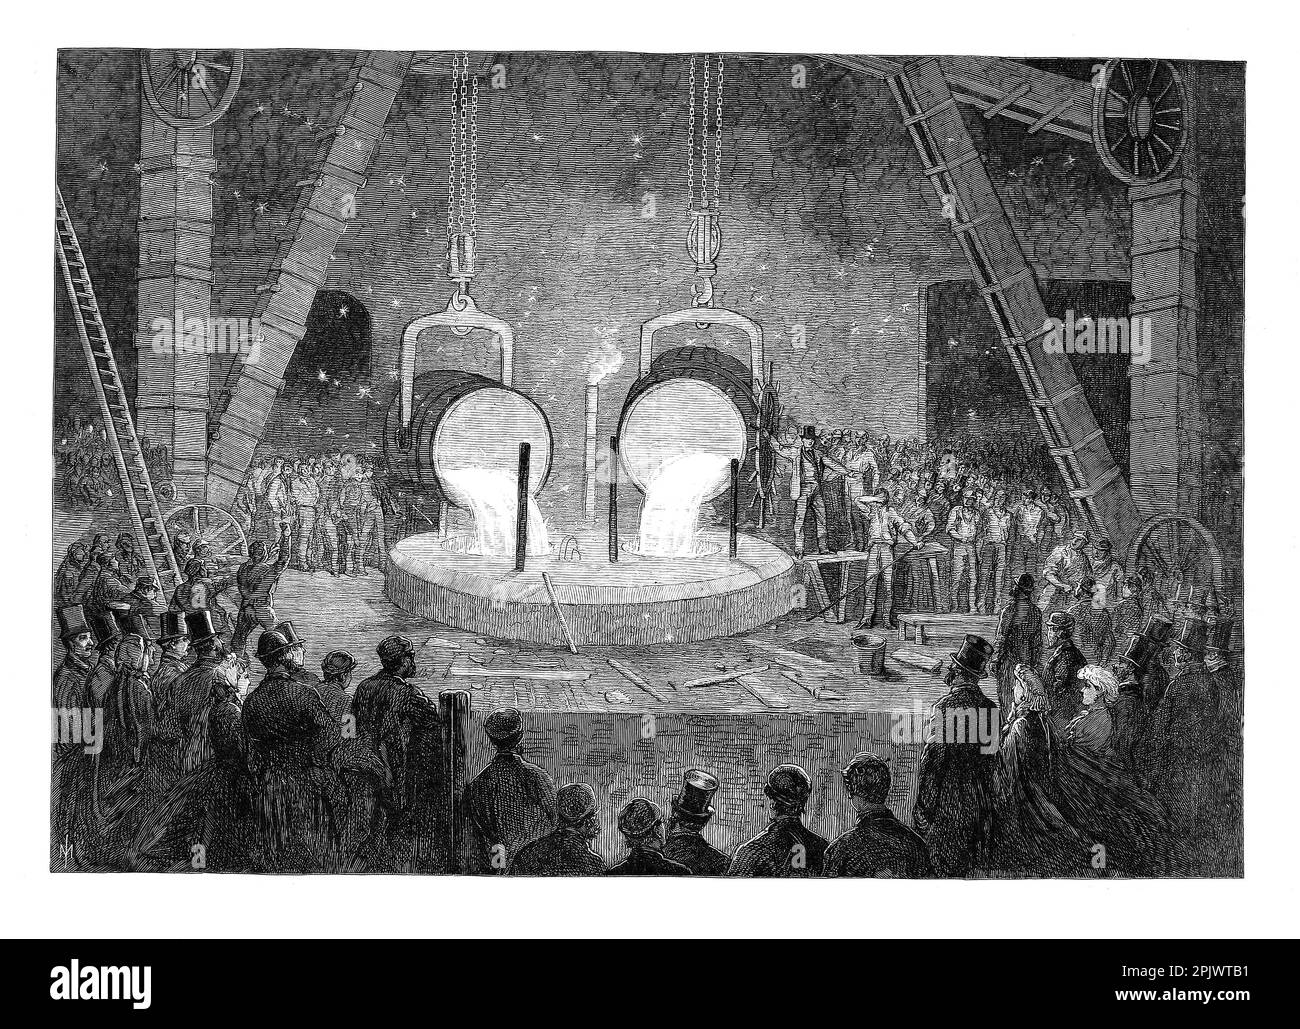 Im Jahr 1865 wurden Besucher in der Penn's Marine Engine Factory in Greenwich, London, England, beim Gießen eines Zylinders für eine Wasserdampfmaschine gezeichnet. Das Unternehmen wurde zum Hauptlieferanten der Royal Navy, als es den Übergang von Segel- zu Dampf-Energie vollzog. Stockfoto